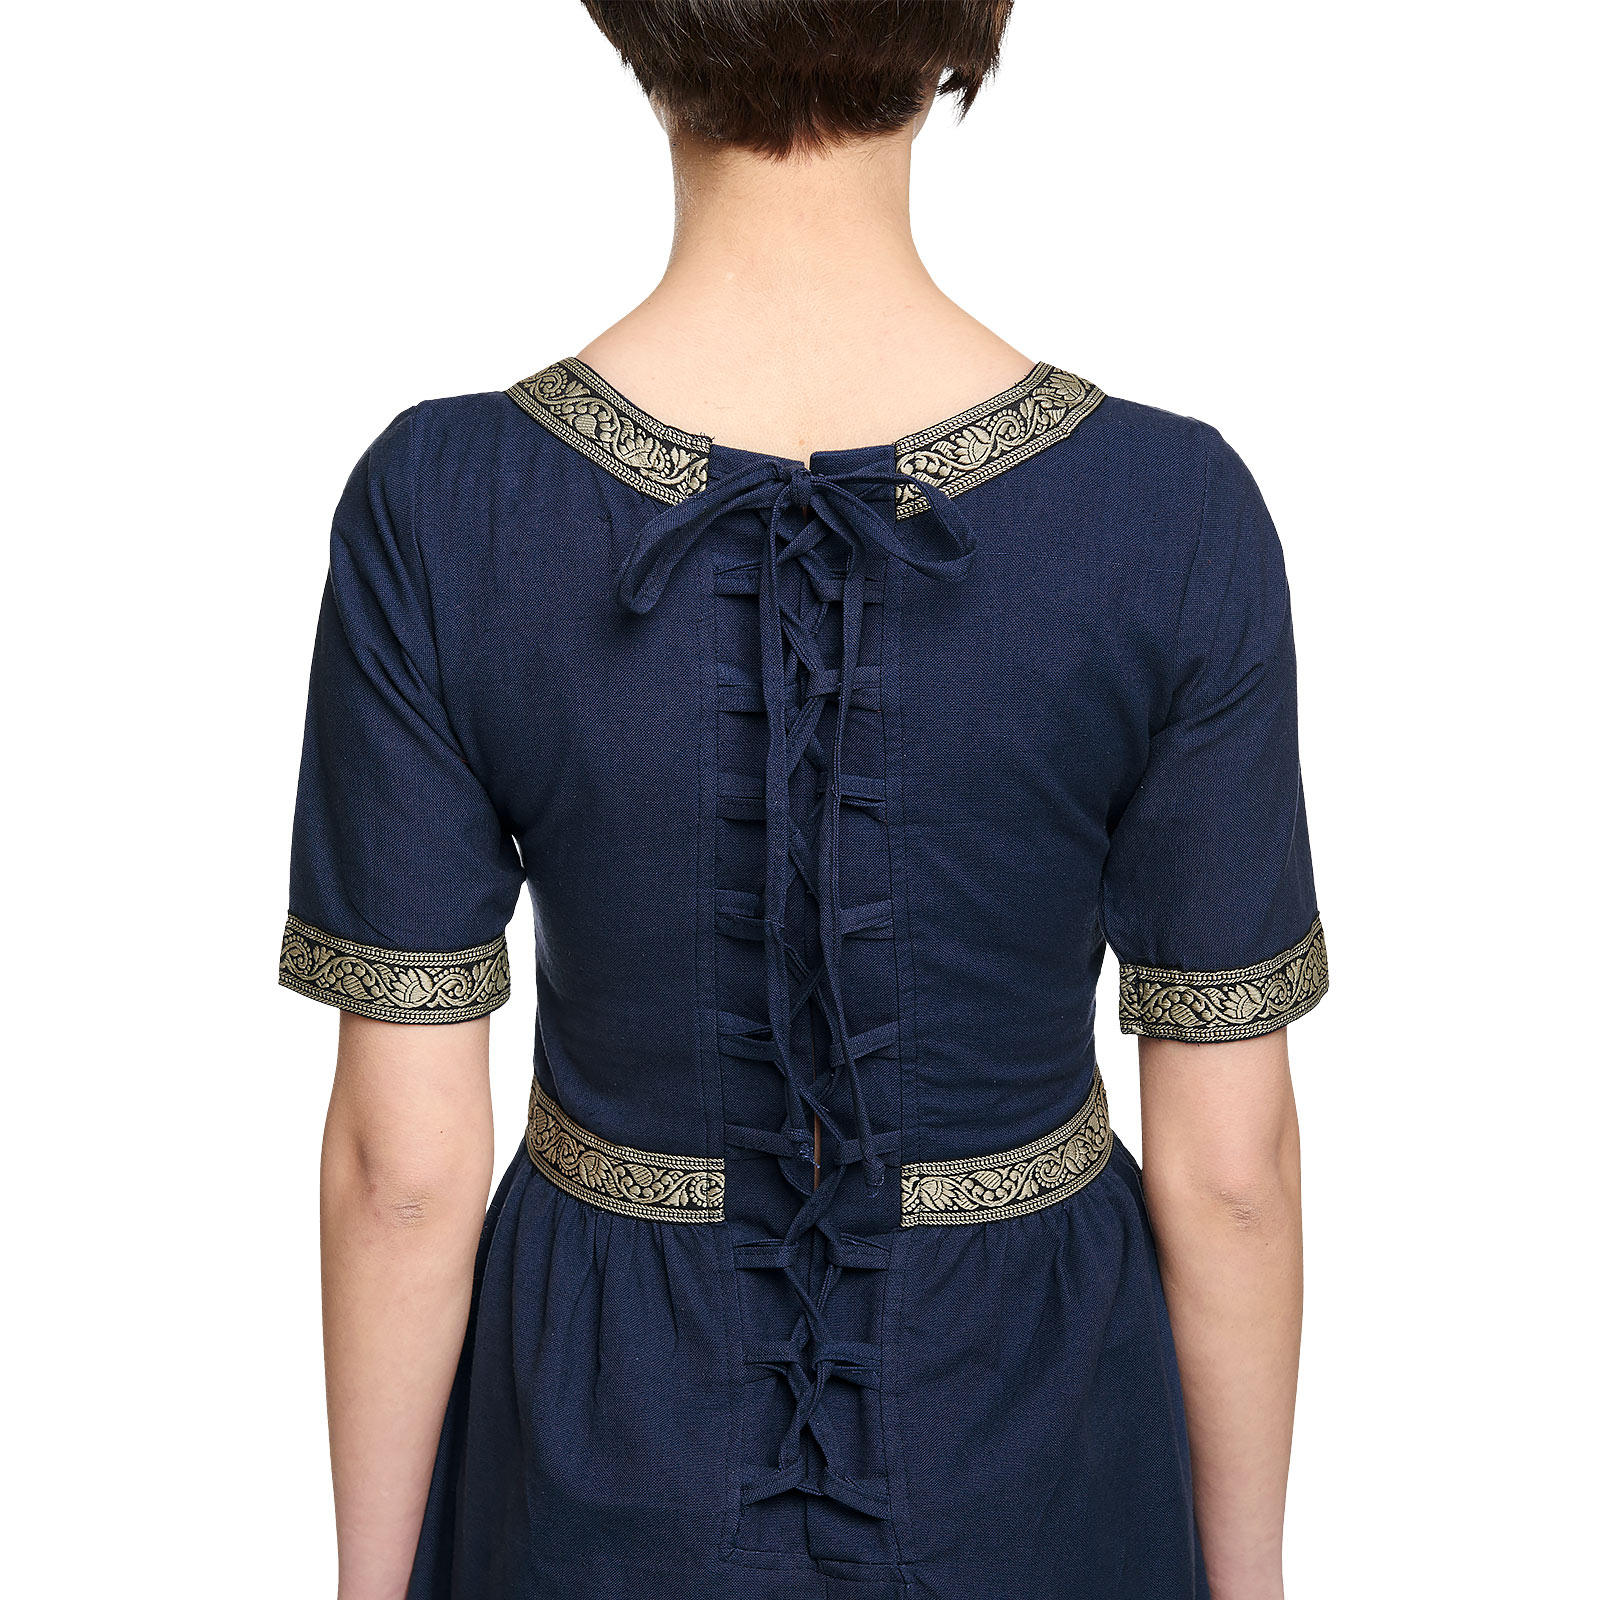 Mittelalter Kleid Ennlin mit Kurzarm blau